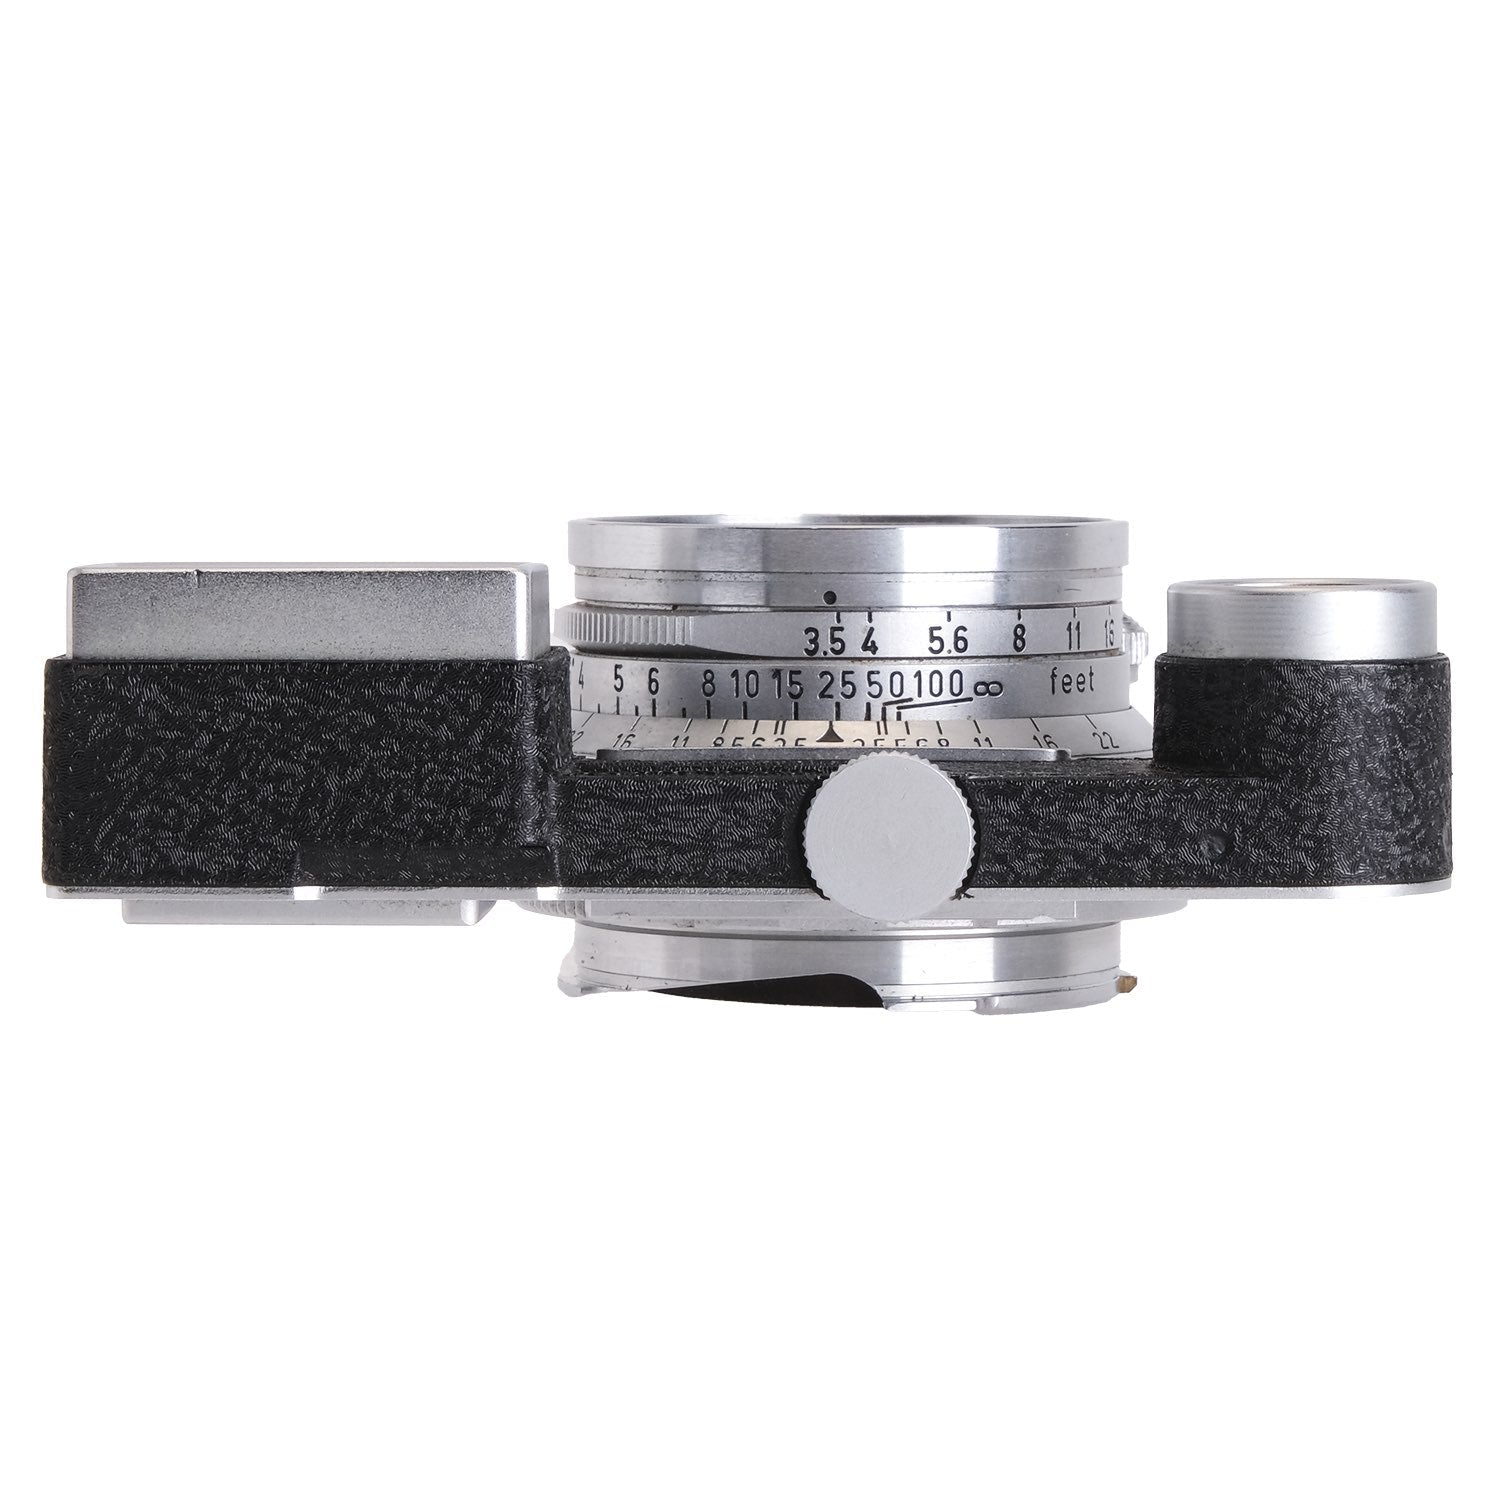 Leica 3.5cm f3.5 Summaron M3 1437410